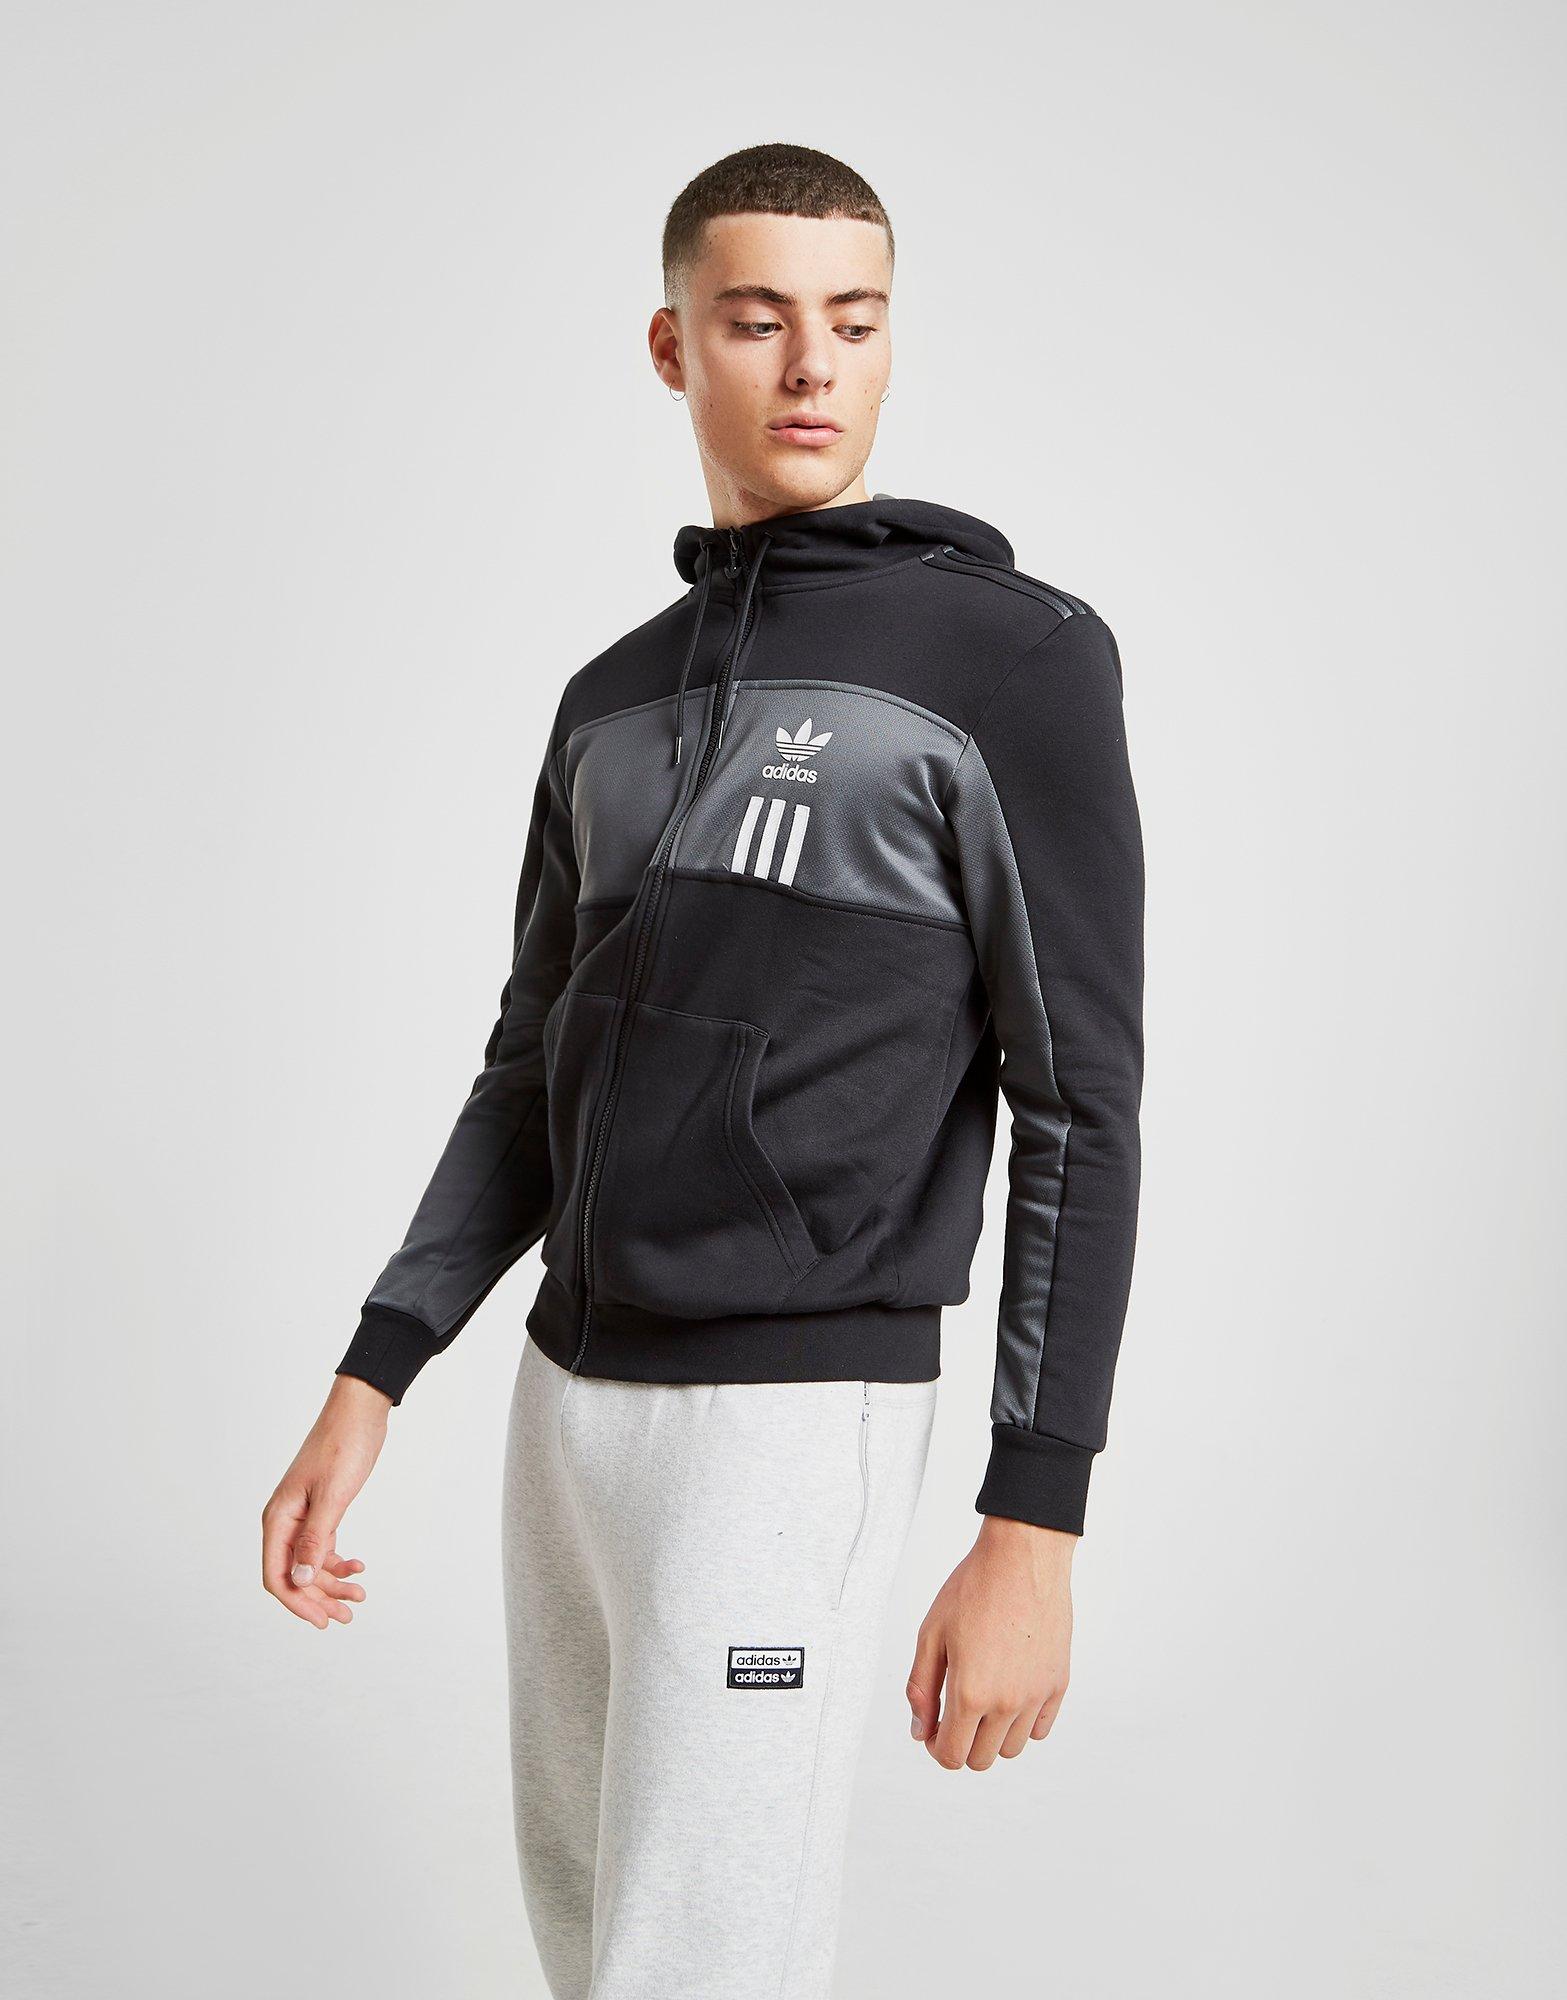 New adidas Originals Men's Id96 Full Zip Hoodie | eBay